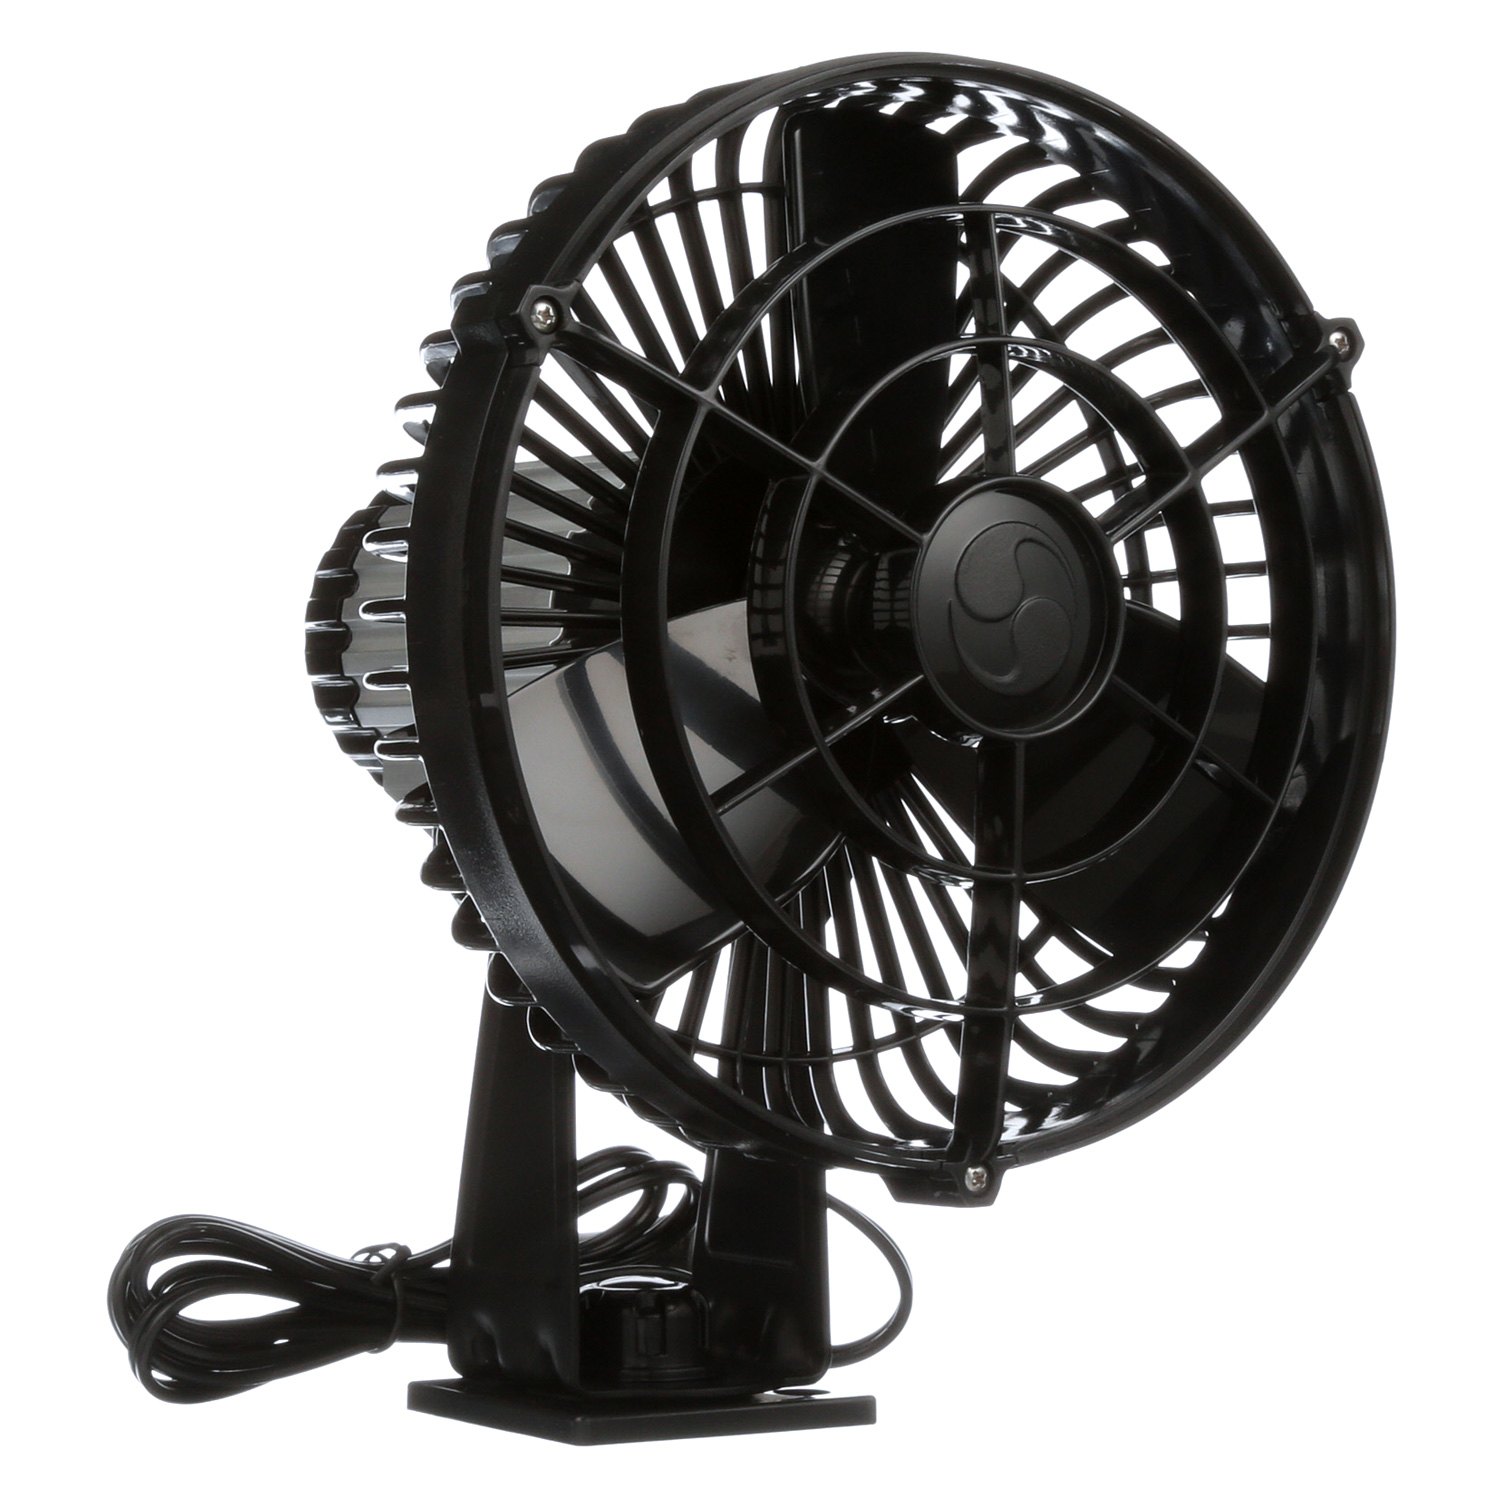 Caframo Kona 817 12v 3-speed 7" Weatherproof Fan Black for sale online 